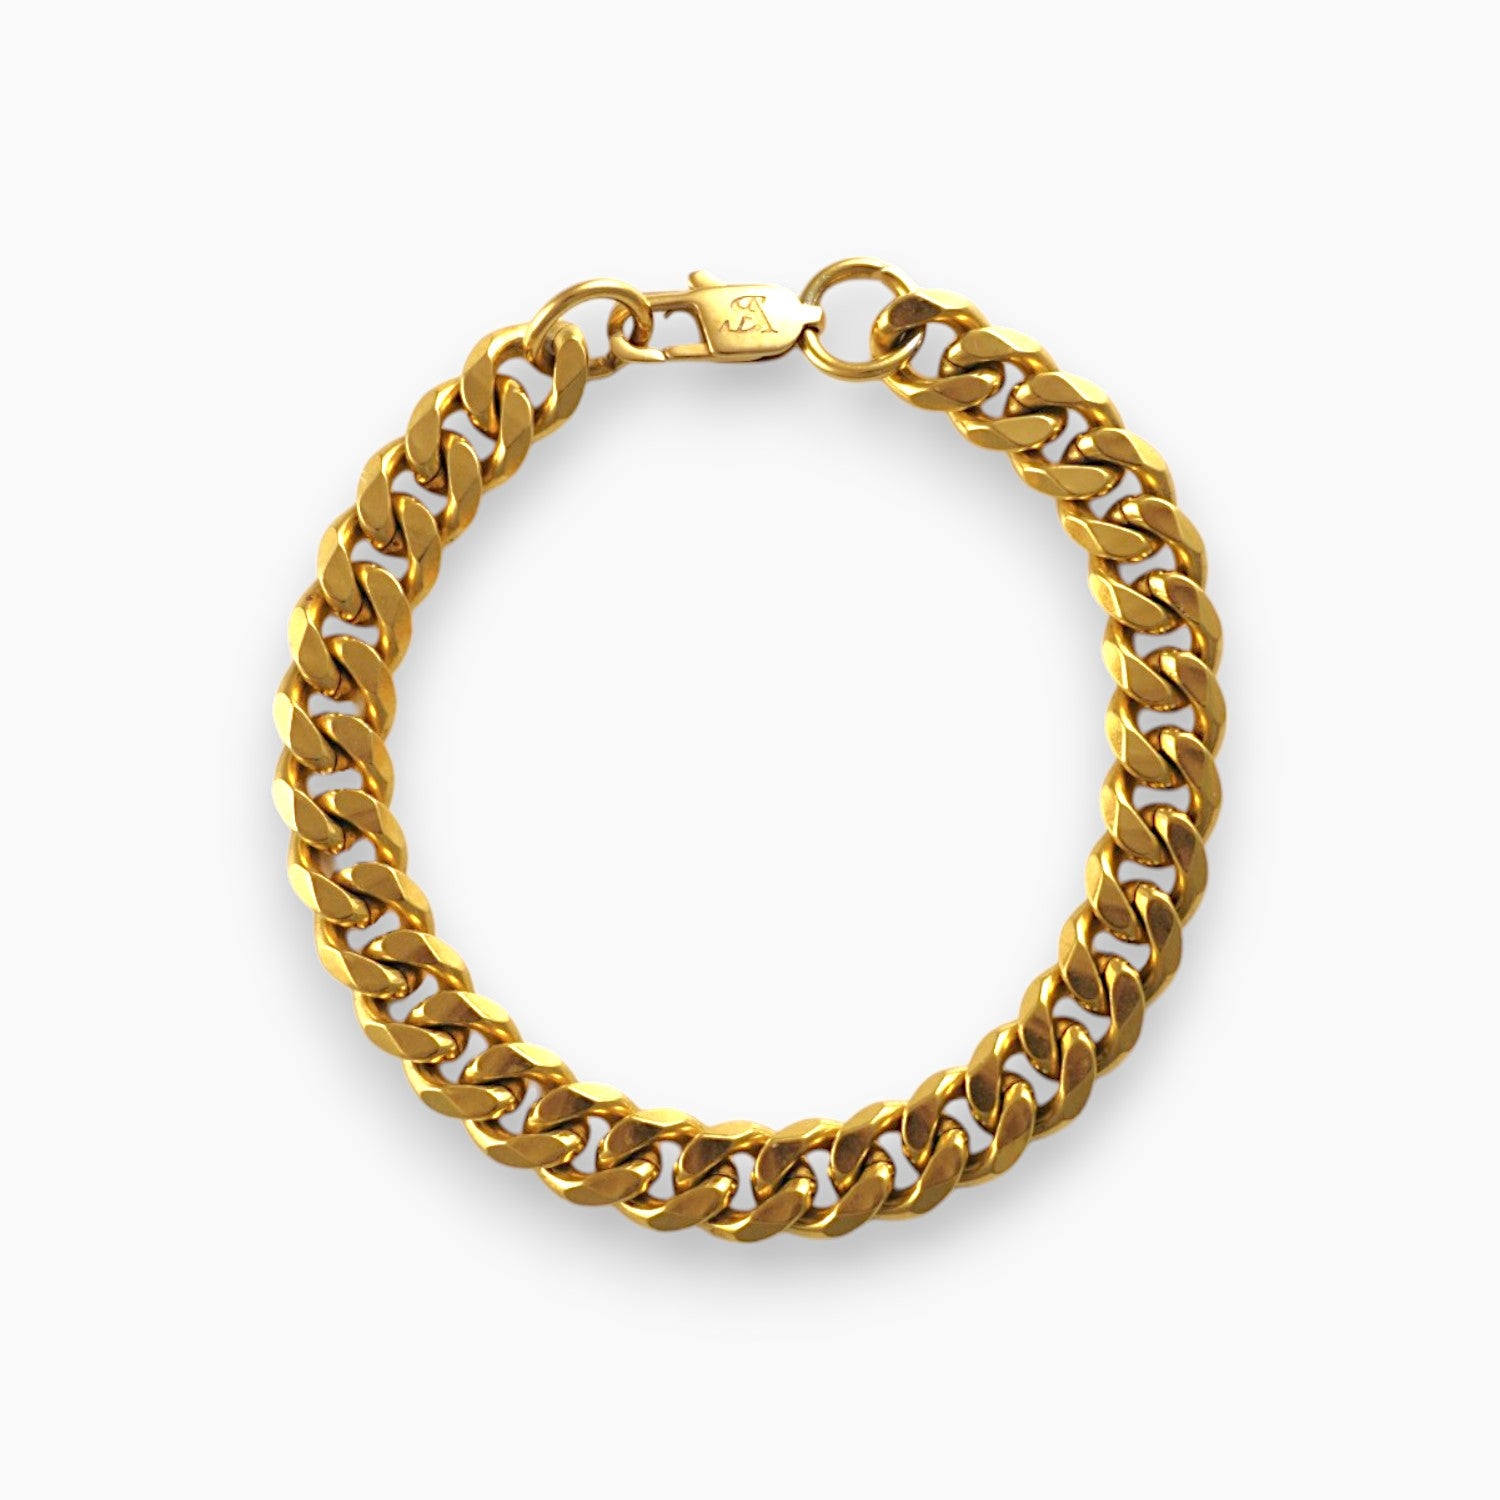 8mm gold cuban link bracelet gold